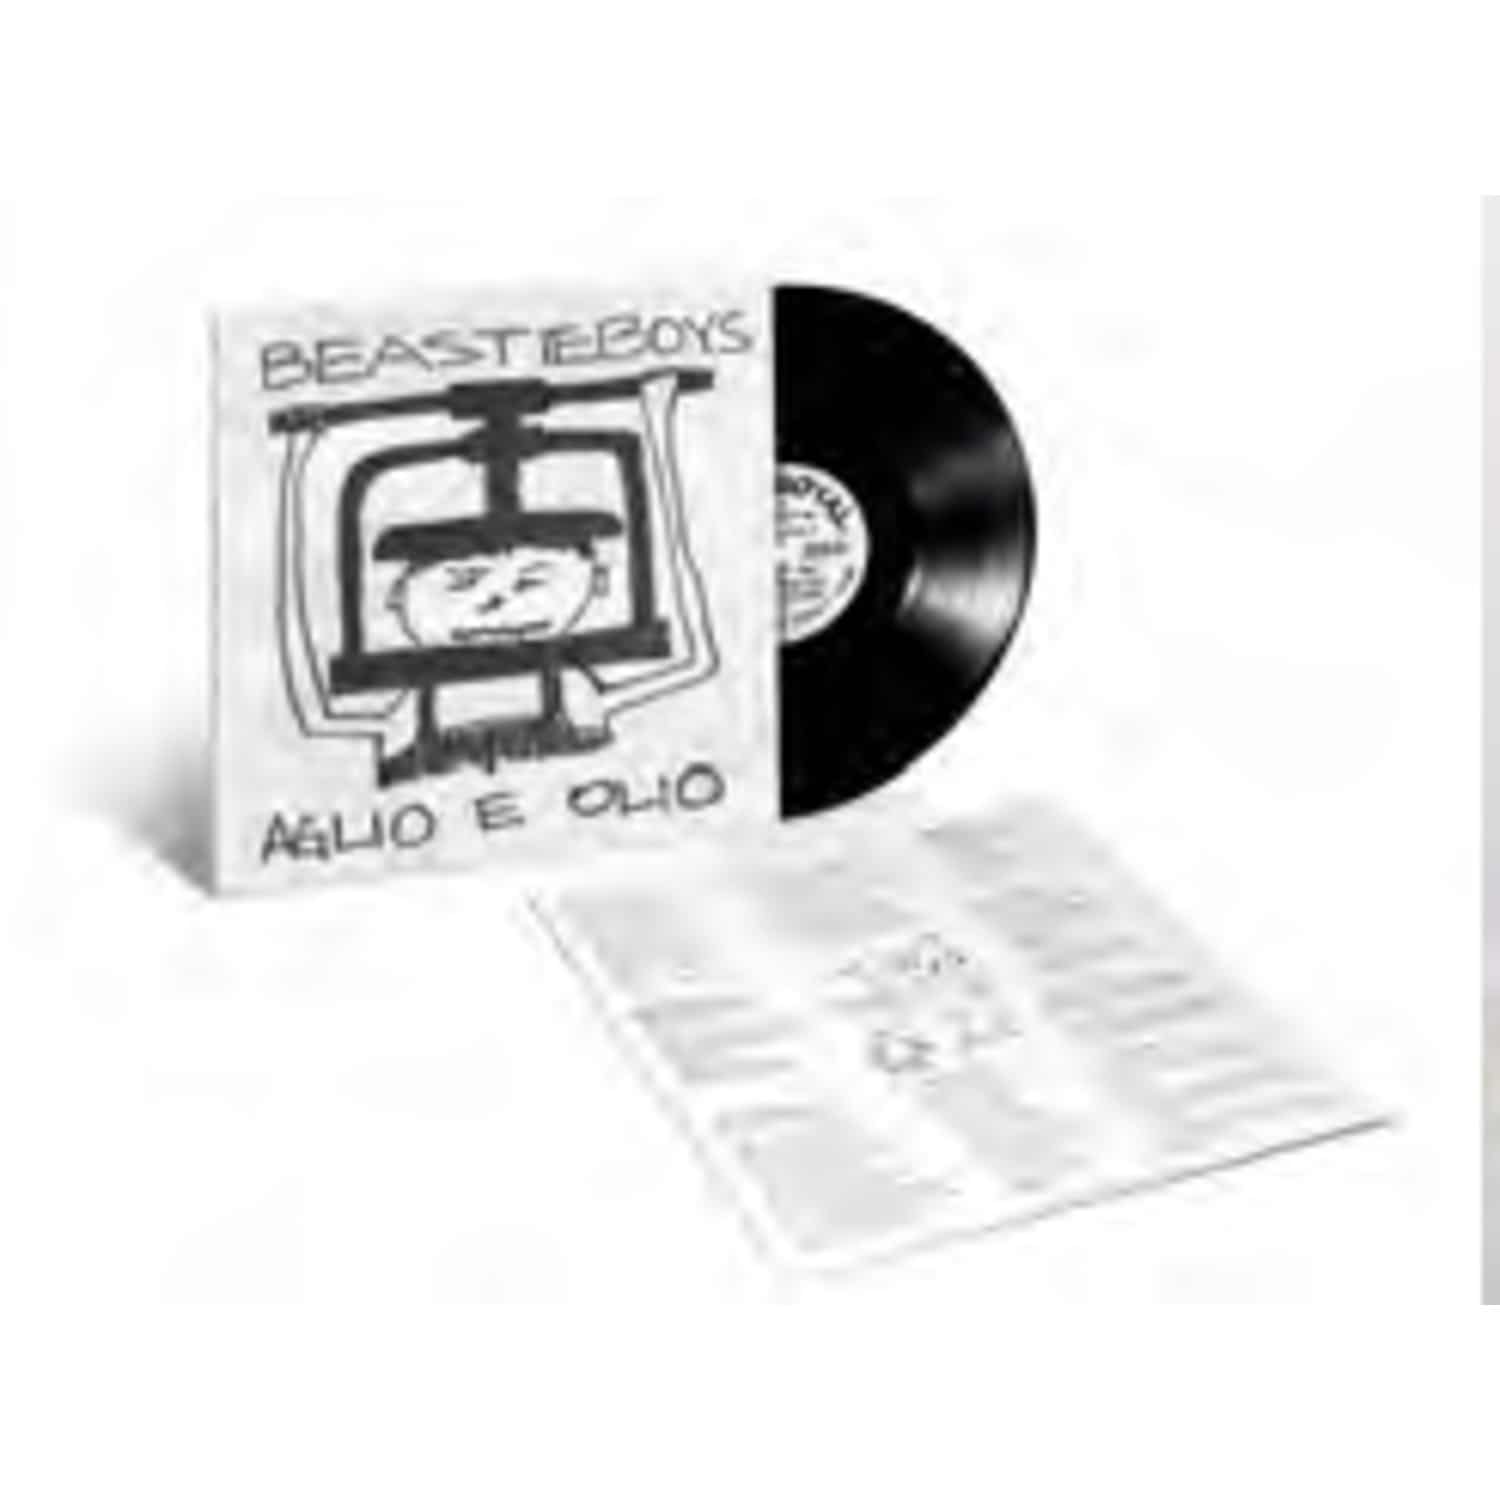 Beastie Boys - AGLIO E OLIO EP 